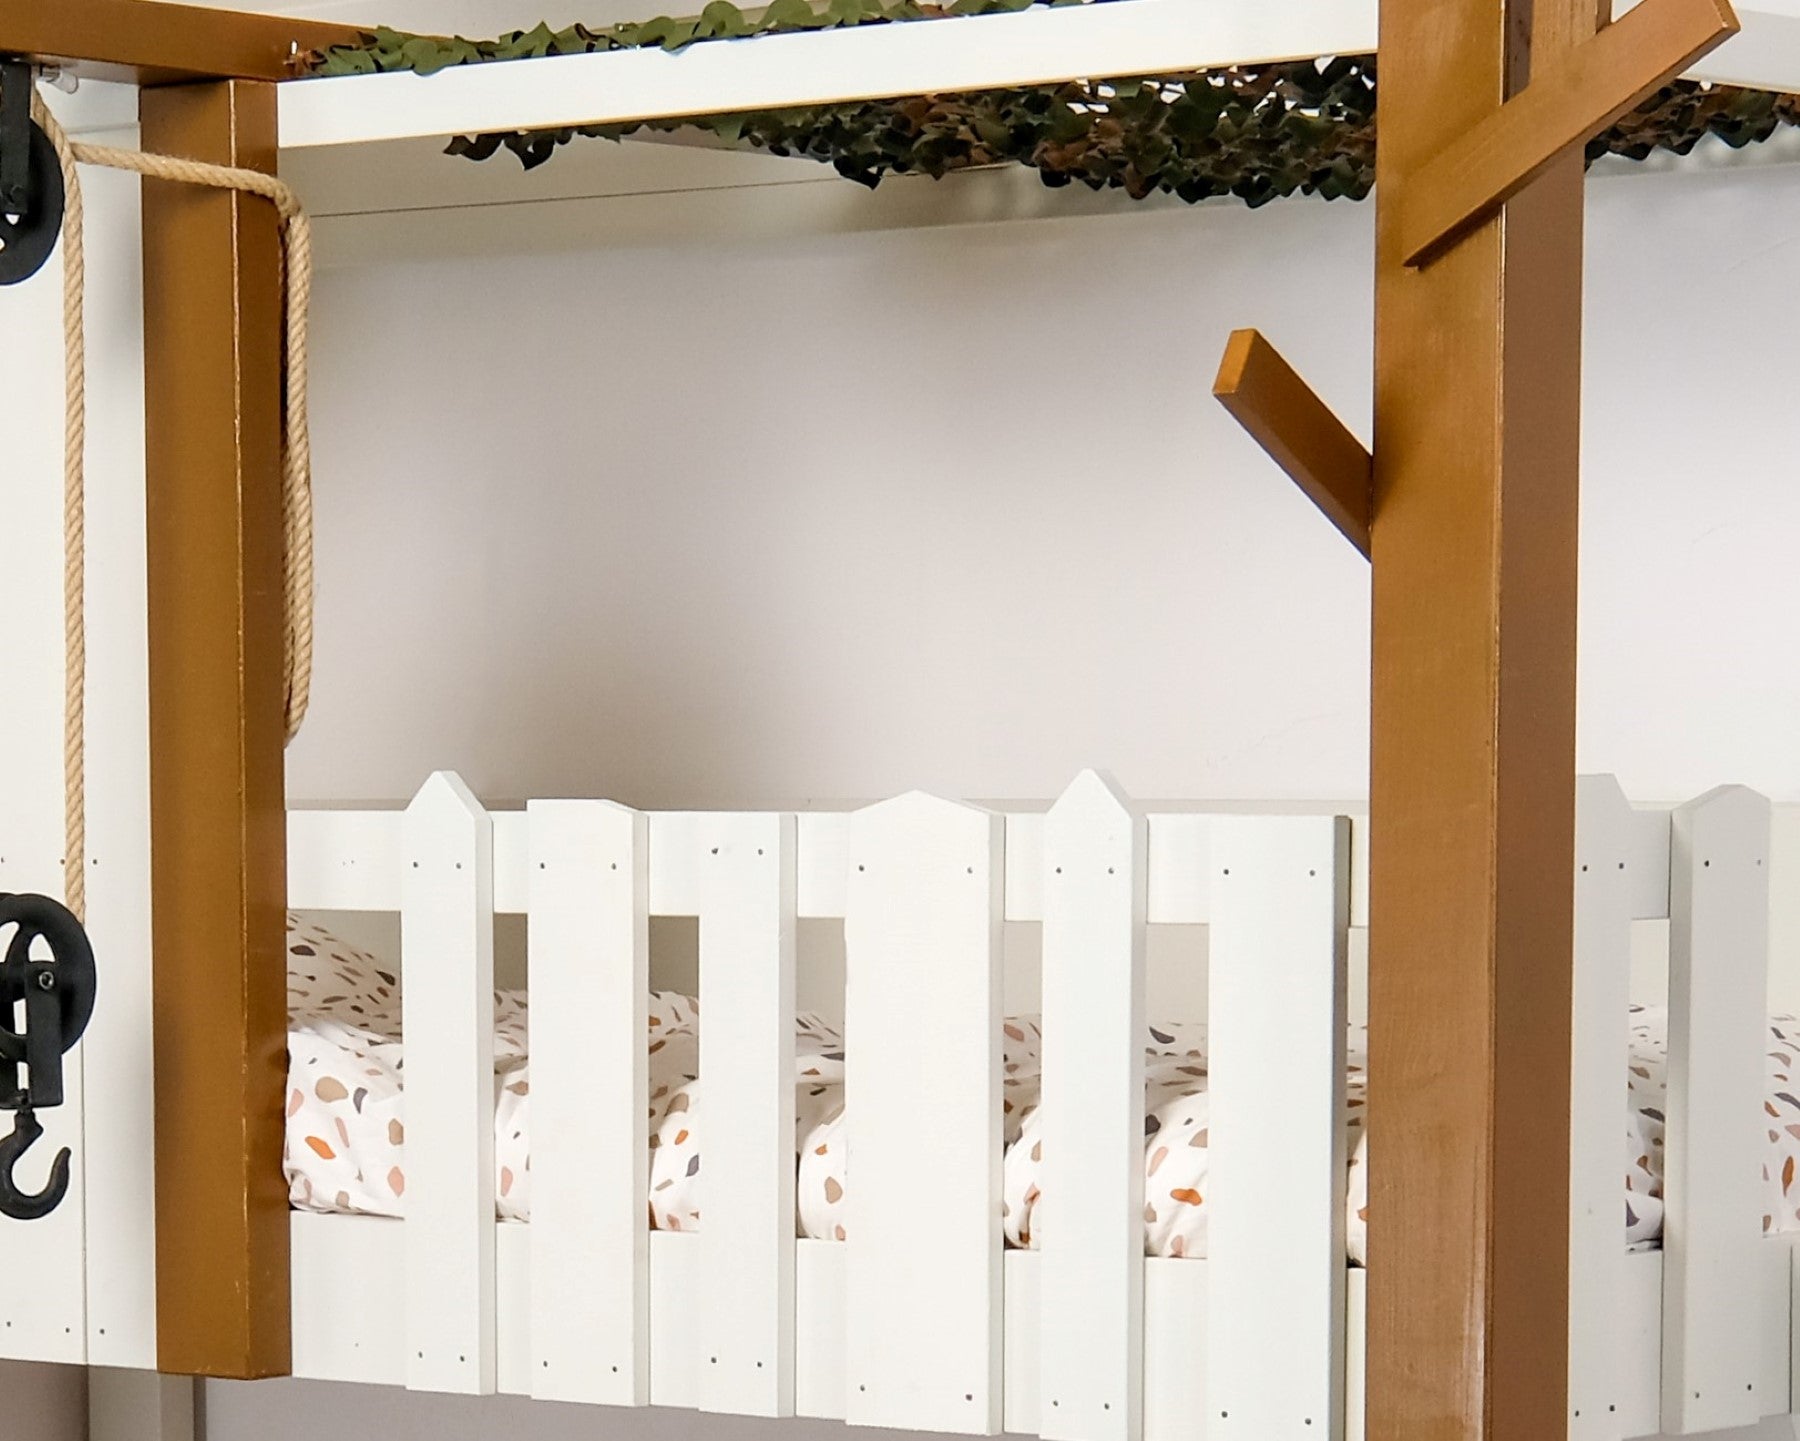 Hoogslaper Boomhut uitvoering comfort kinderbed geverfd kleur grijs wit RAL9002